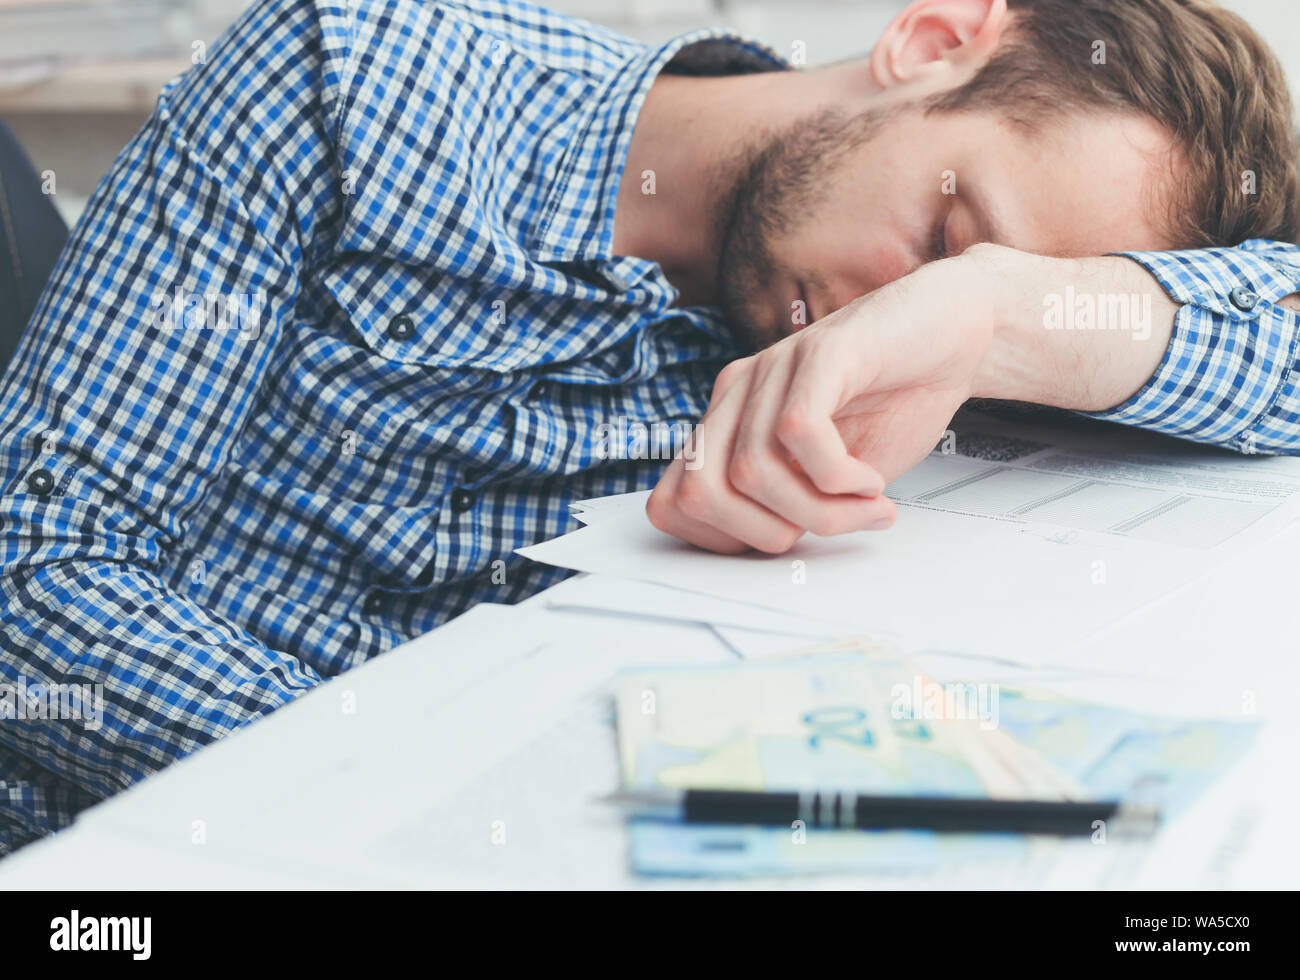 Surmené et fatigué employée de bureau plus de dormir au travail sur table in office Banque D'Images